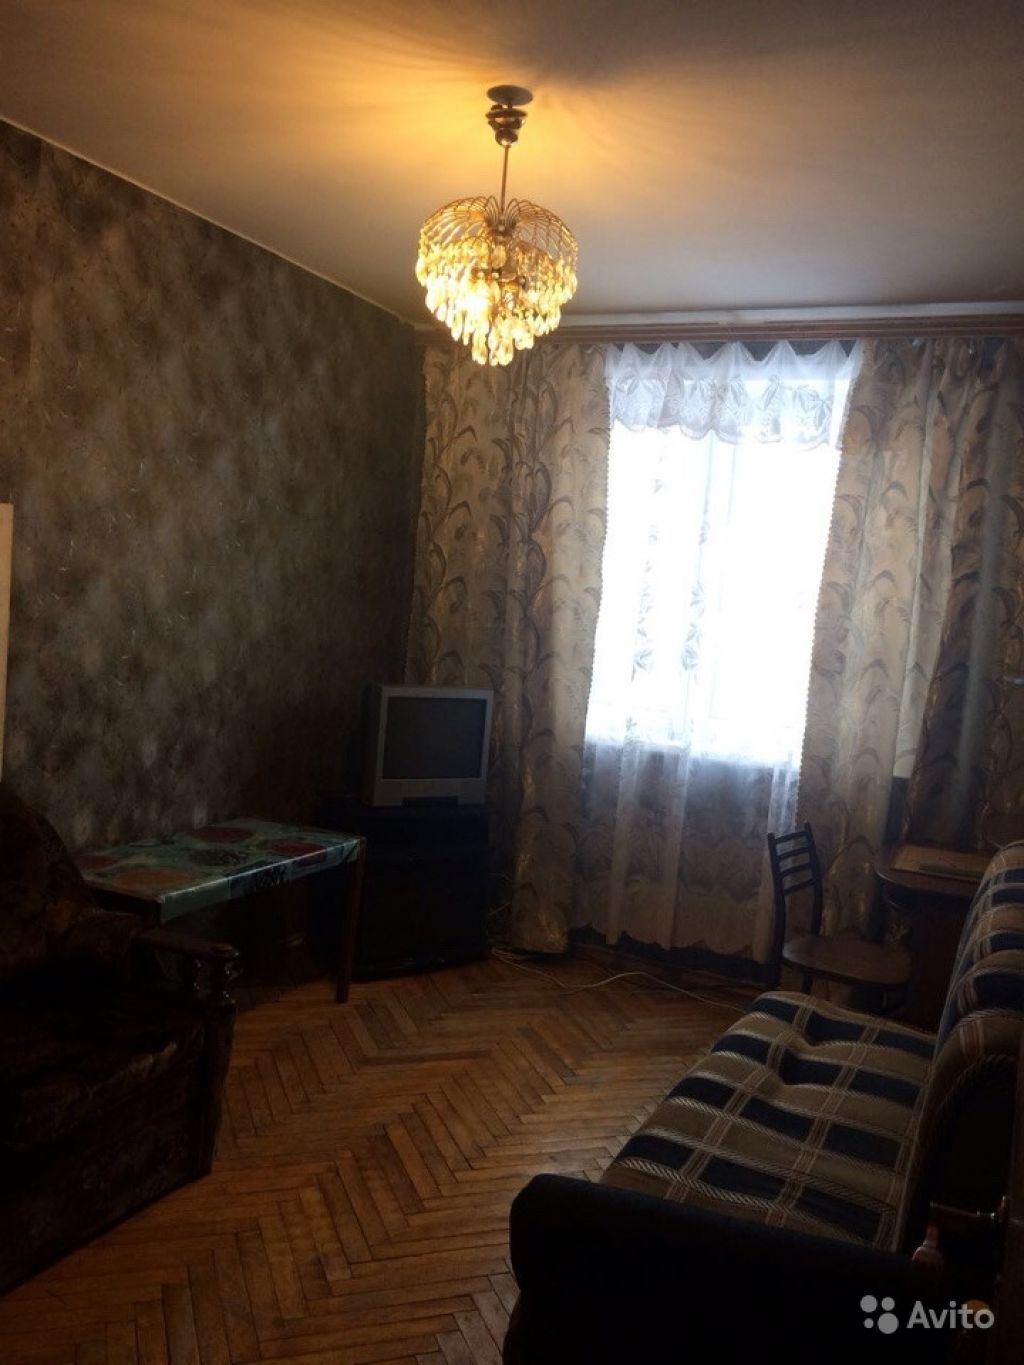 Продам комнату Комната 12.1 м² в 5-к квартире на 1 этаже 12-этажного панельного дома в Москве. Фото 1